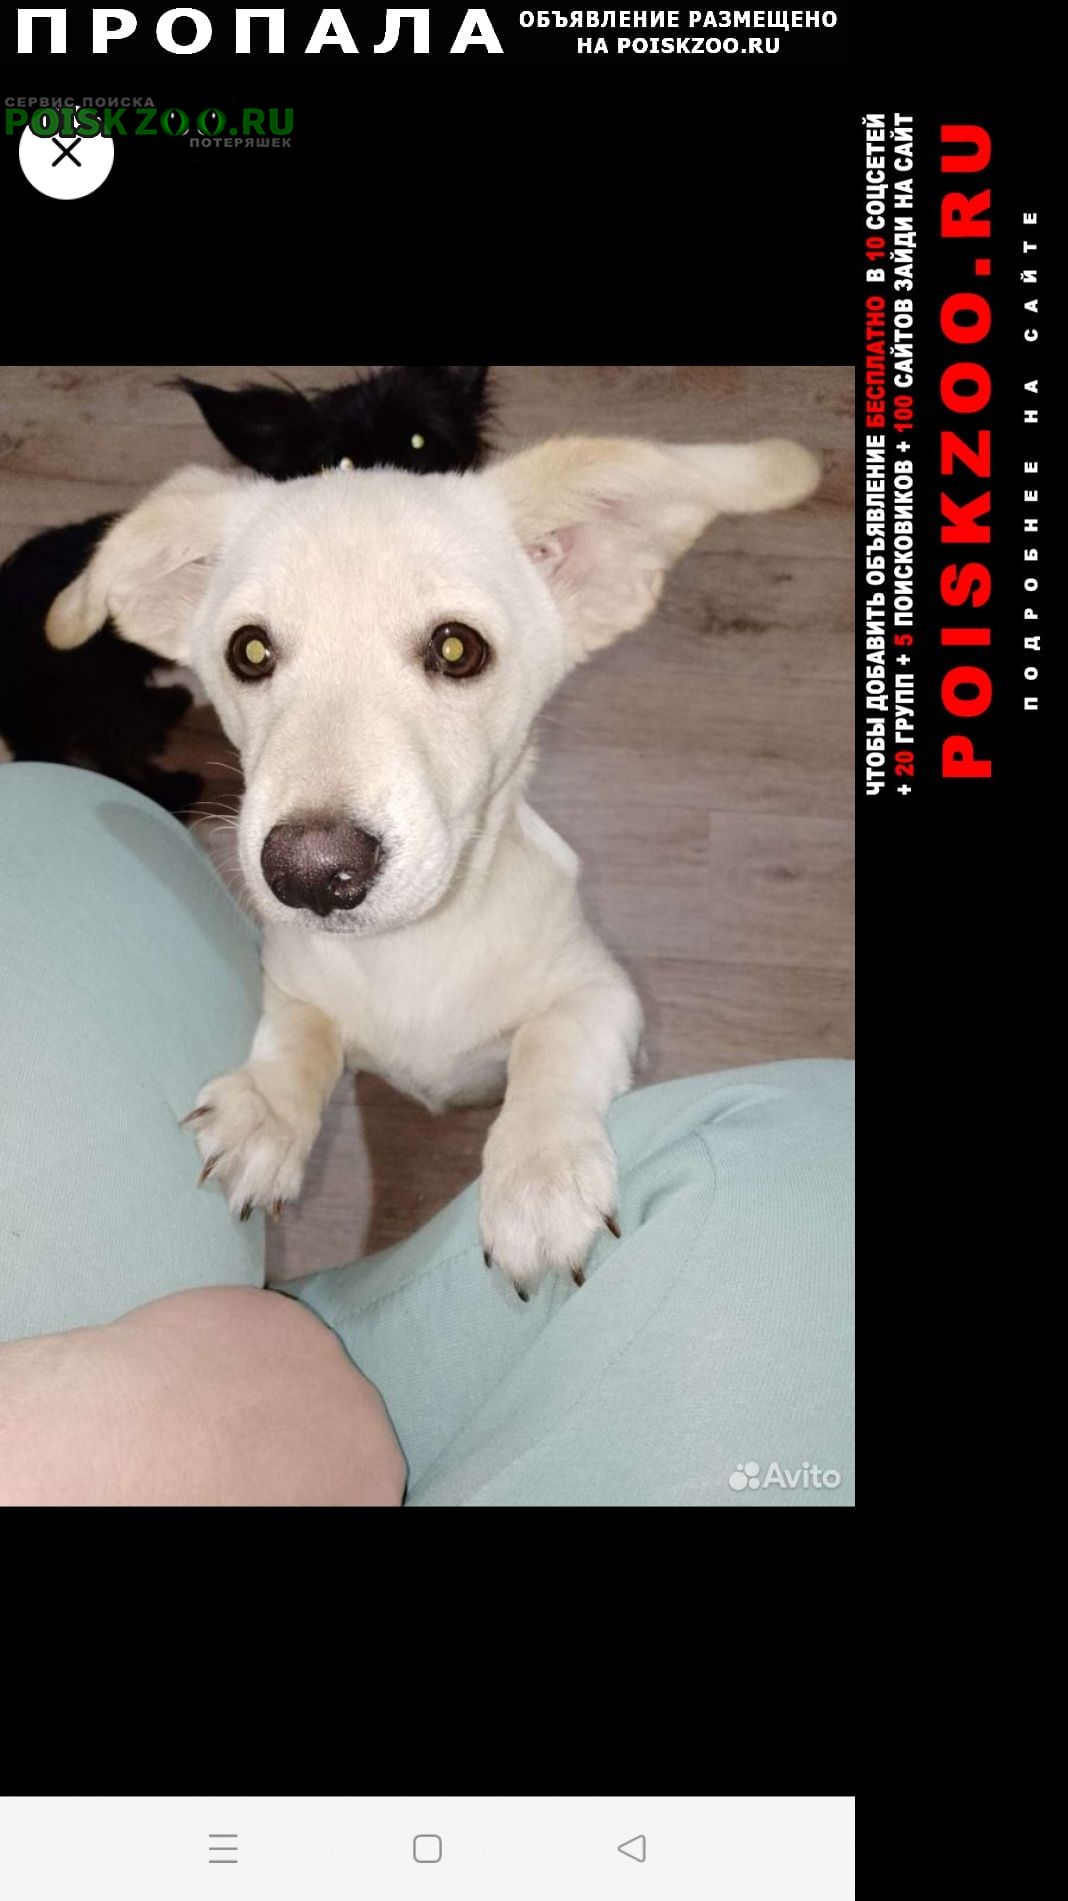 Пропала собака кобель помогите найти ребенка Пермь